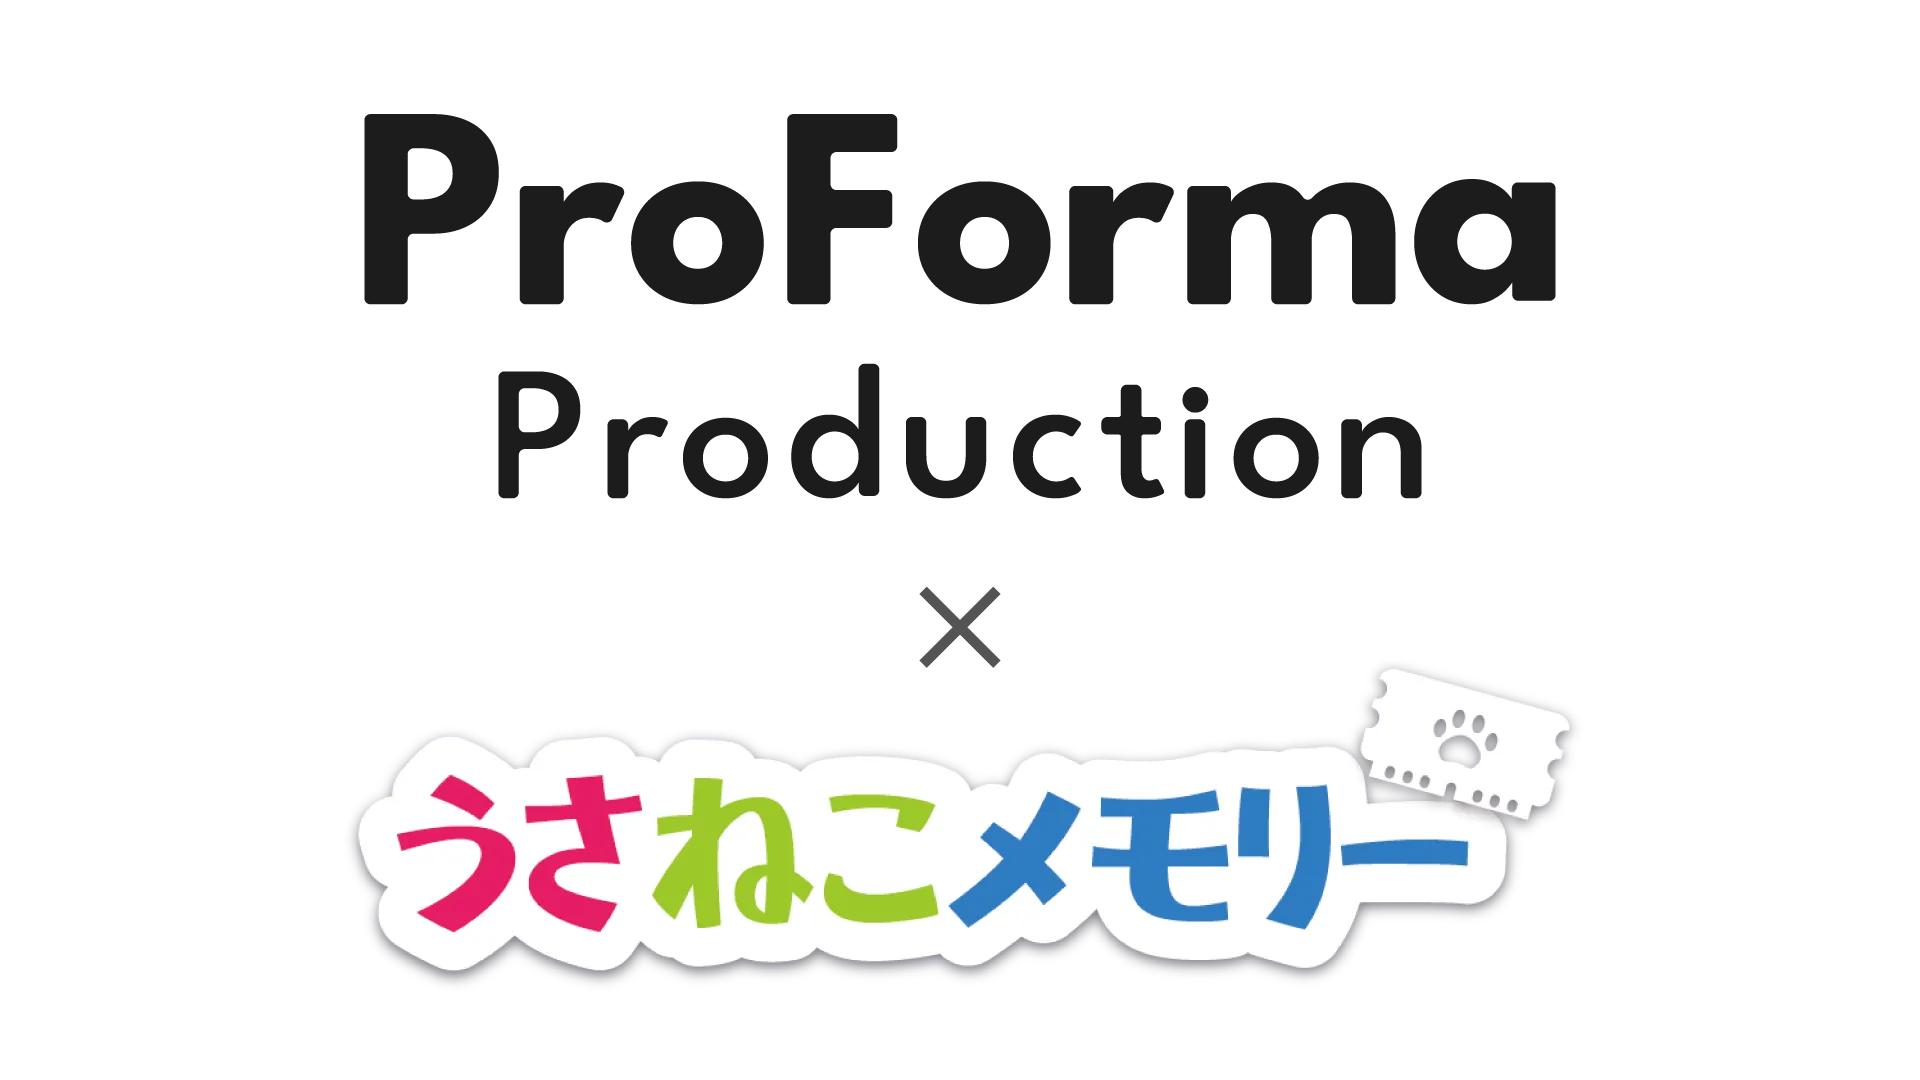 「ProForma Production」と「うさねこメモリー」の業務提携が決定 のコピー